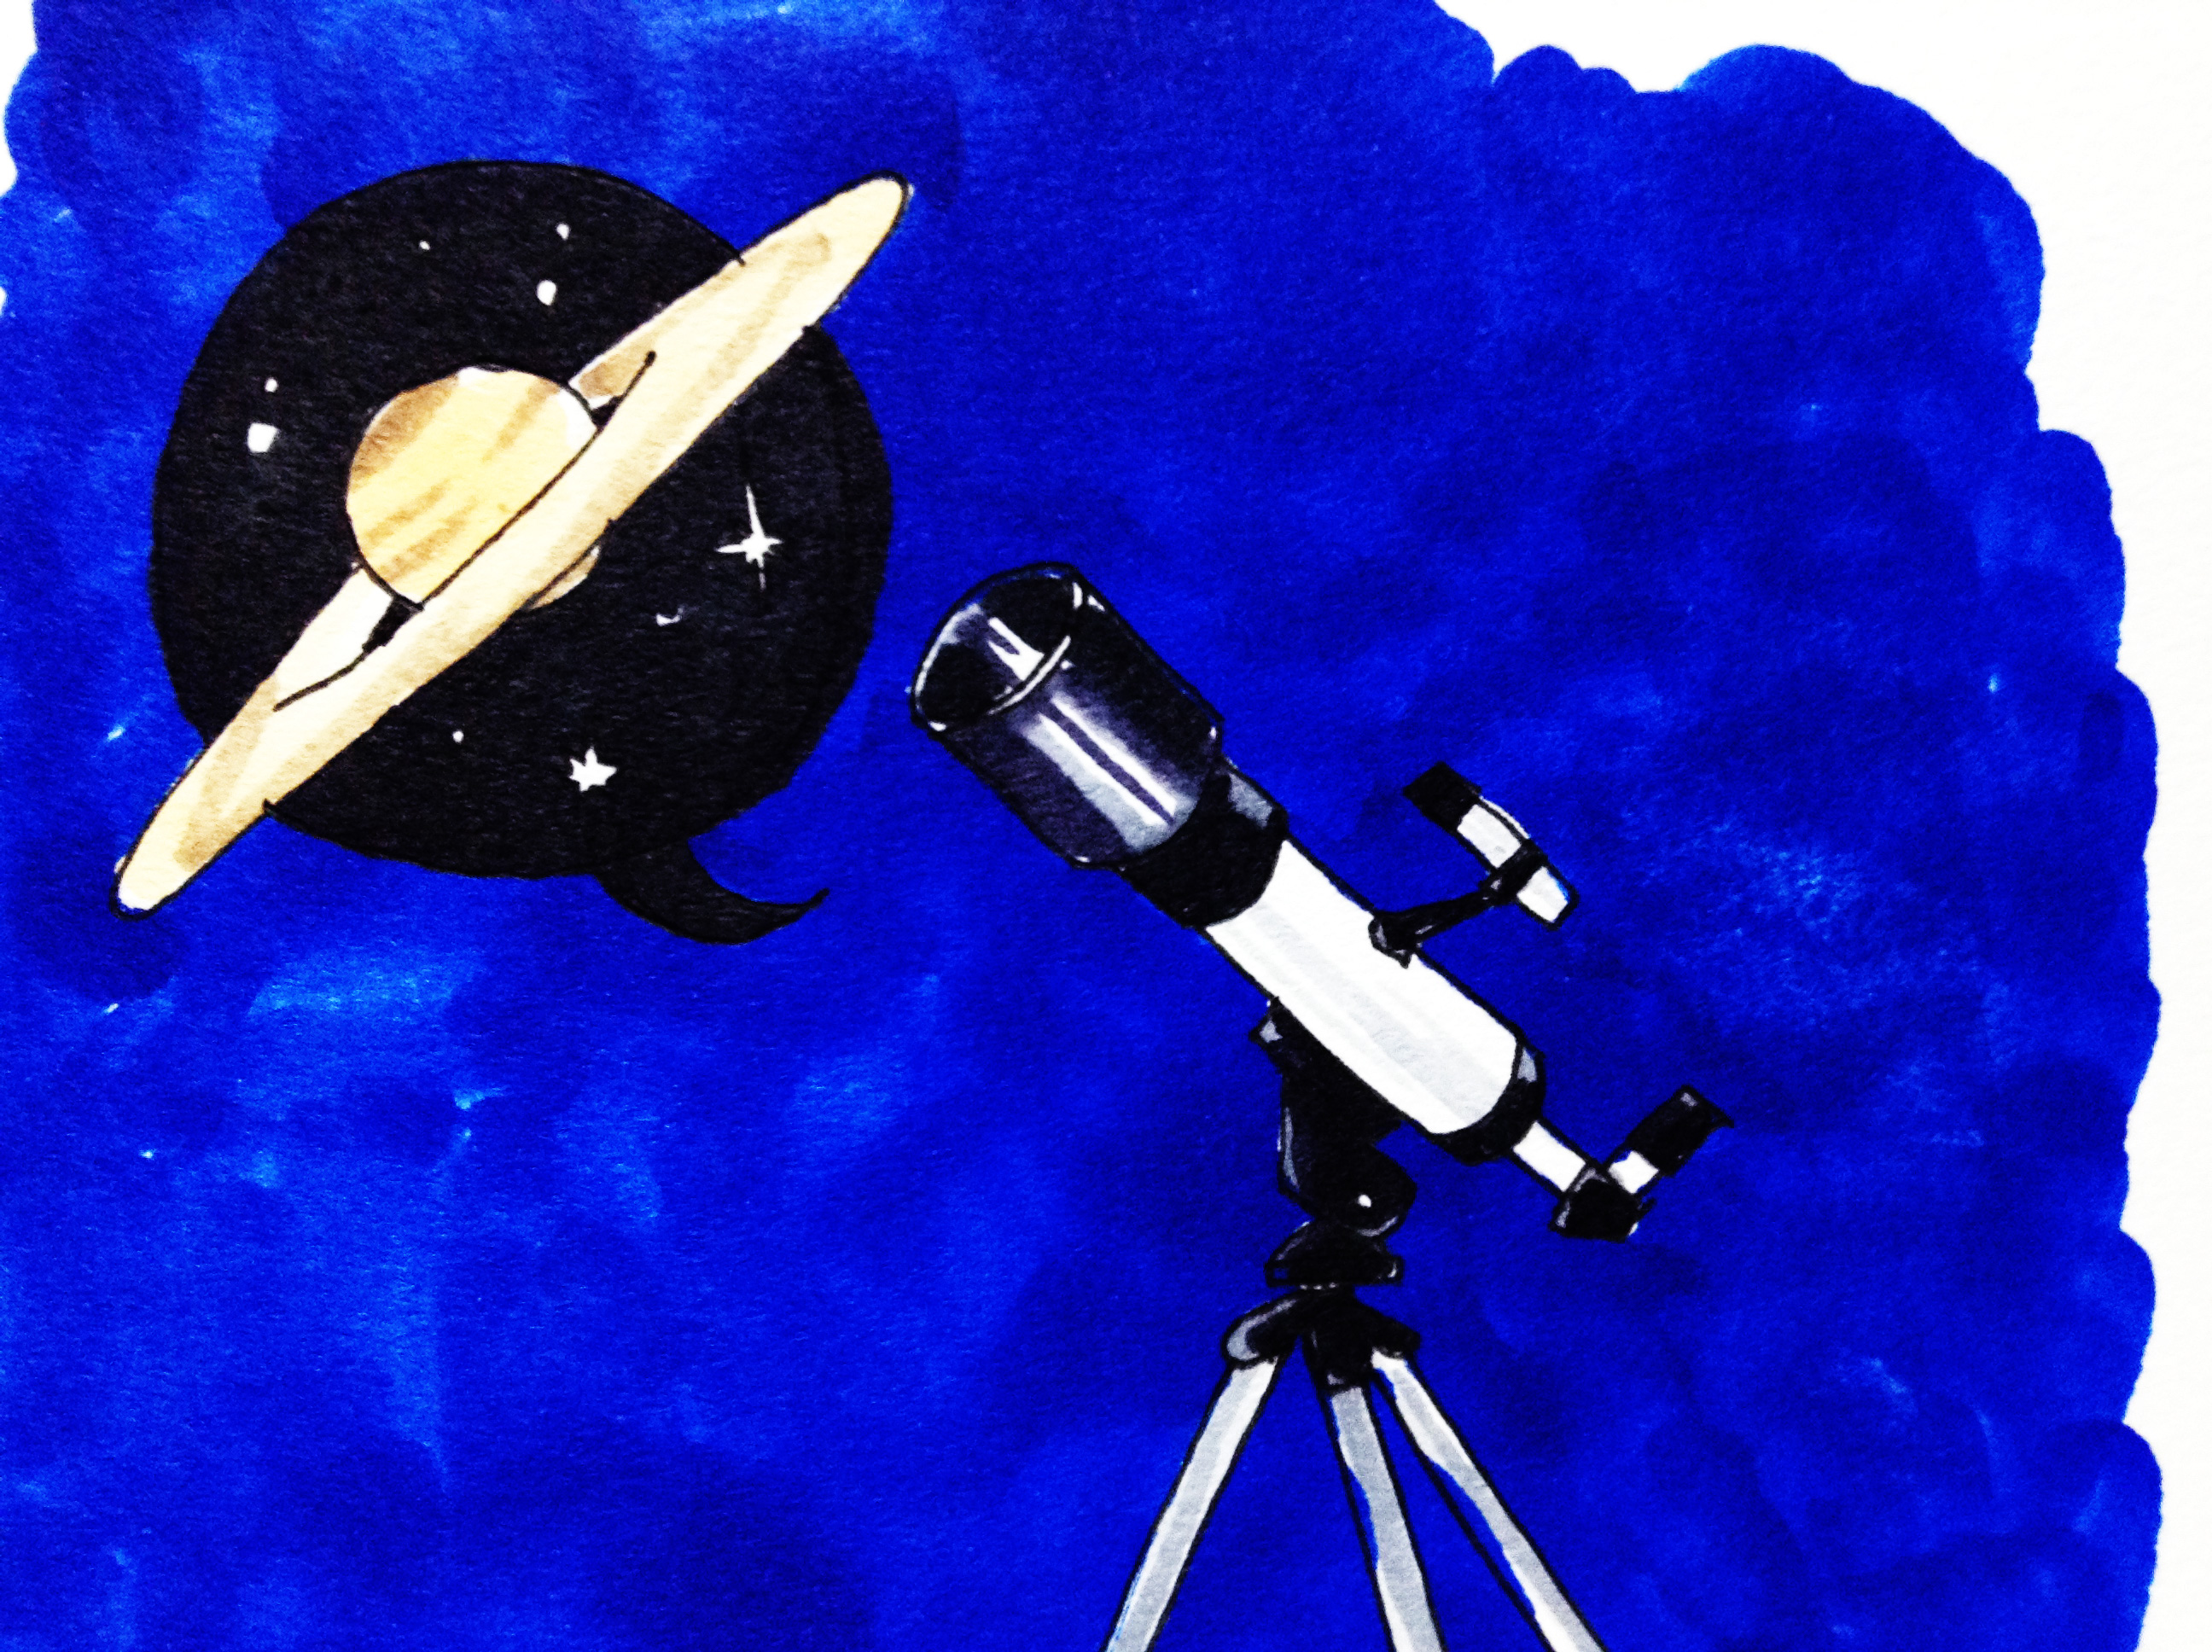 天文台の望遠鏡で土星を観測した思い出のイメージをコピックマーカーで描いたイラスト